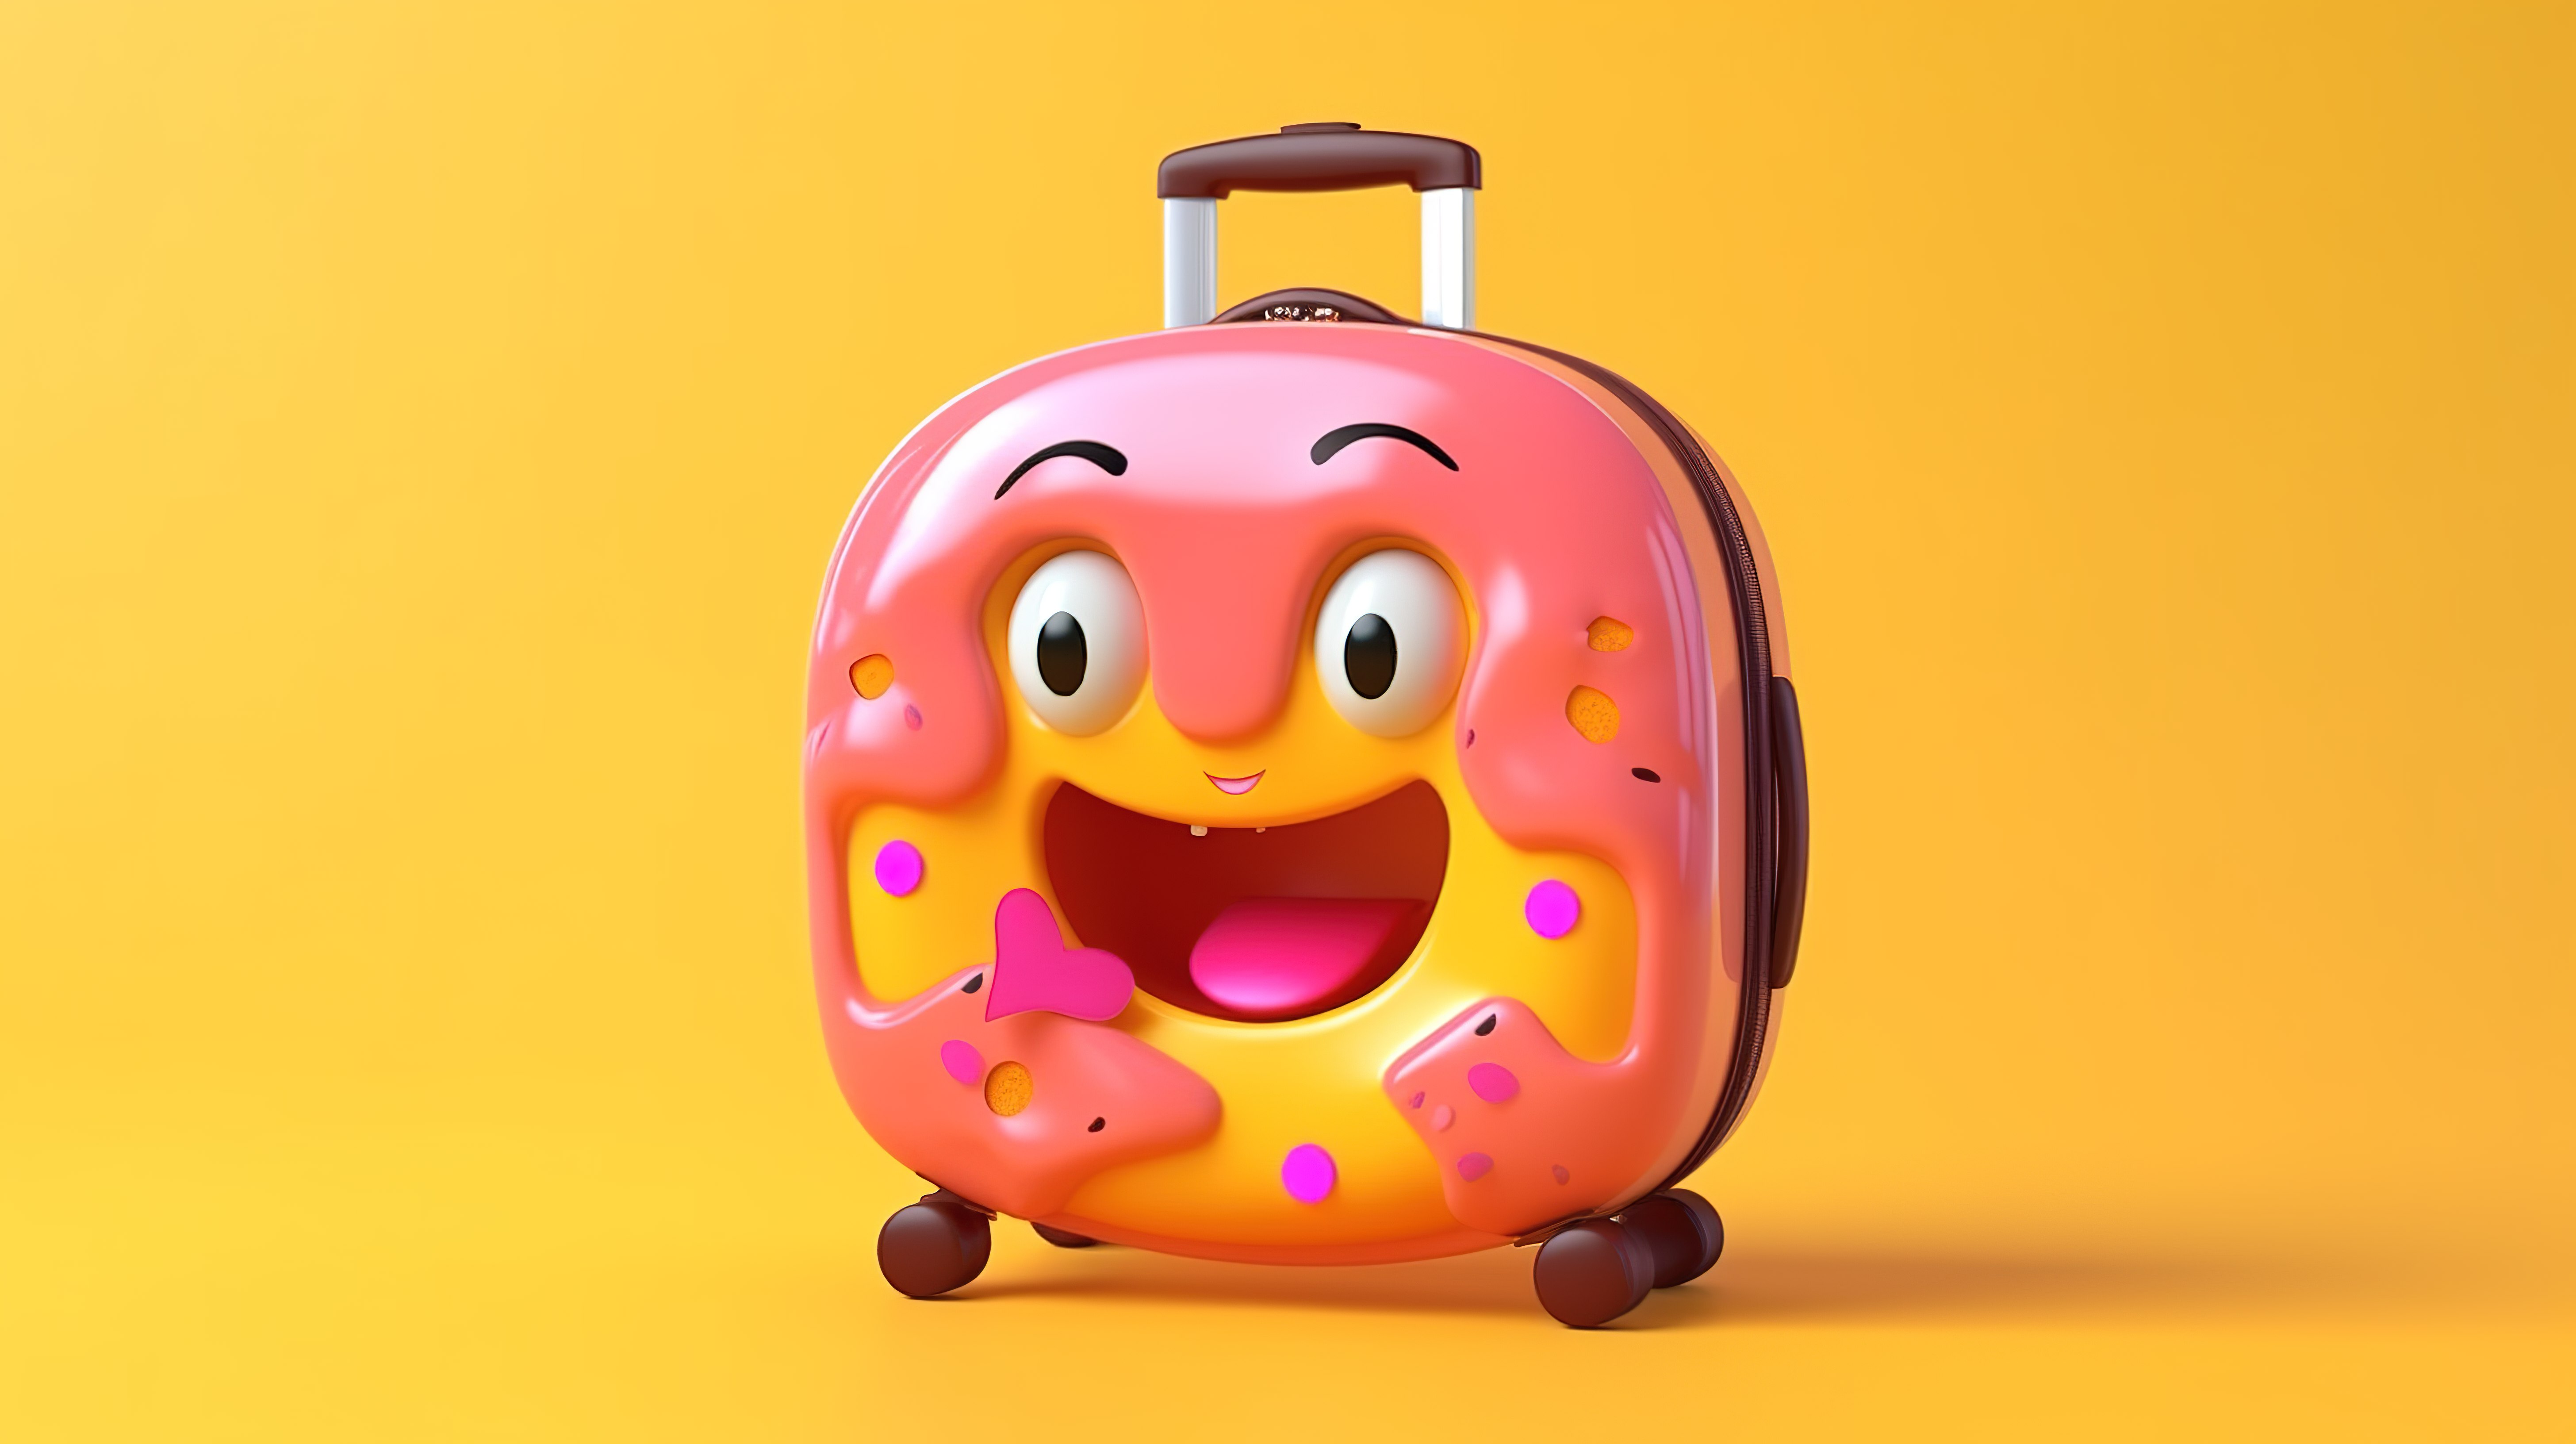 黄色背景上携带橙色旅行箱的粉色釉面甜甜圈角色吉祥物的 3D 渲染图片